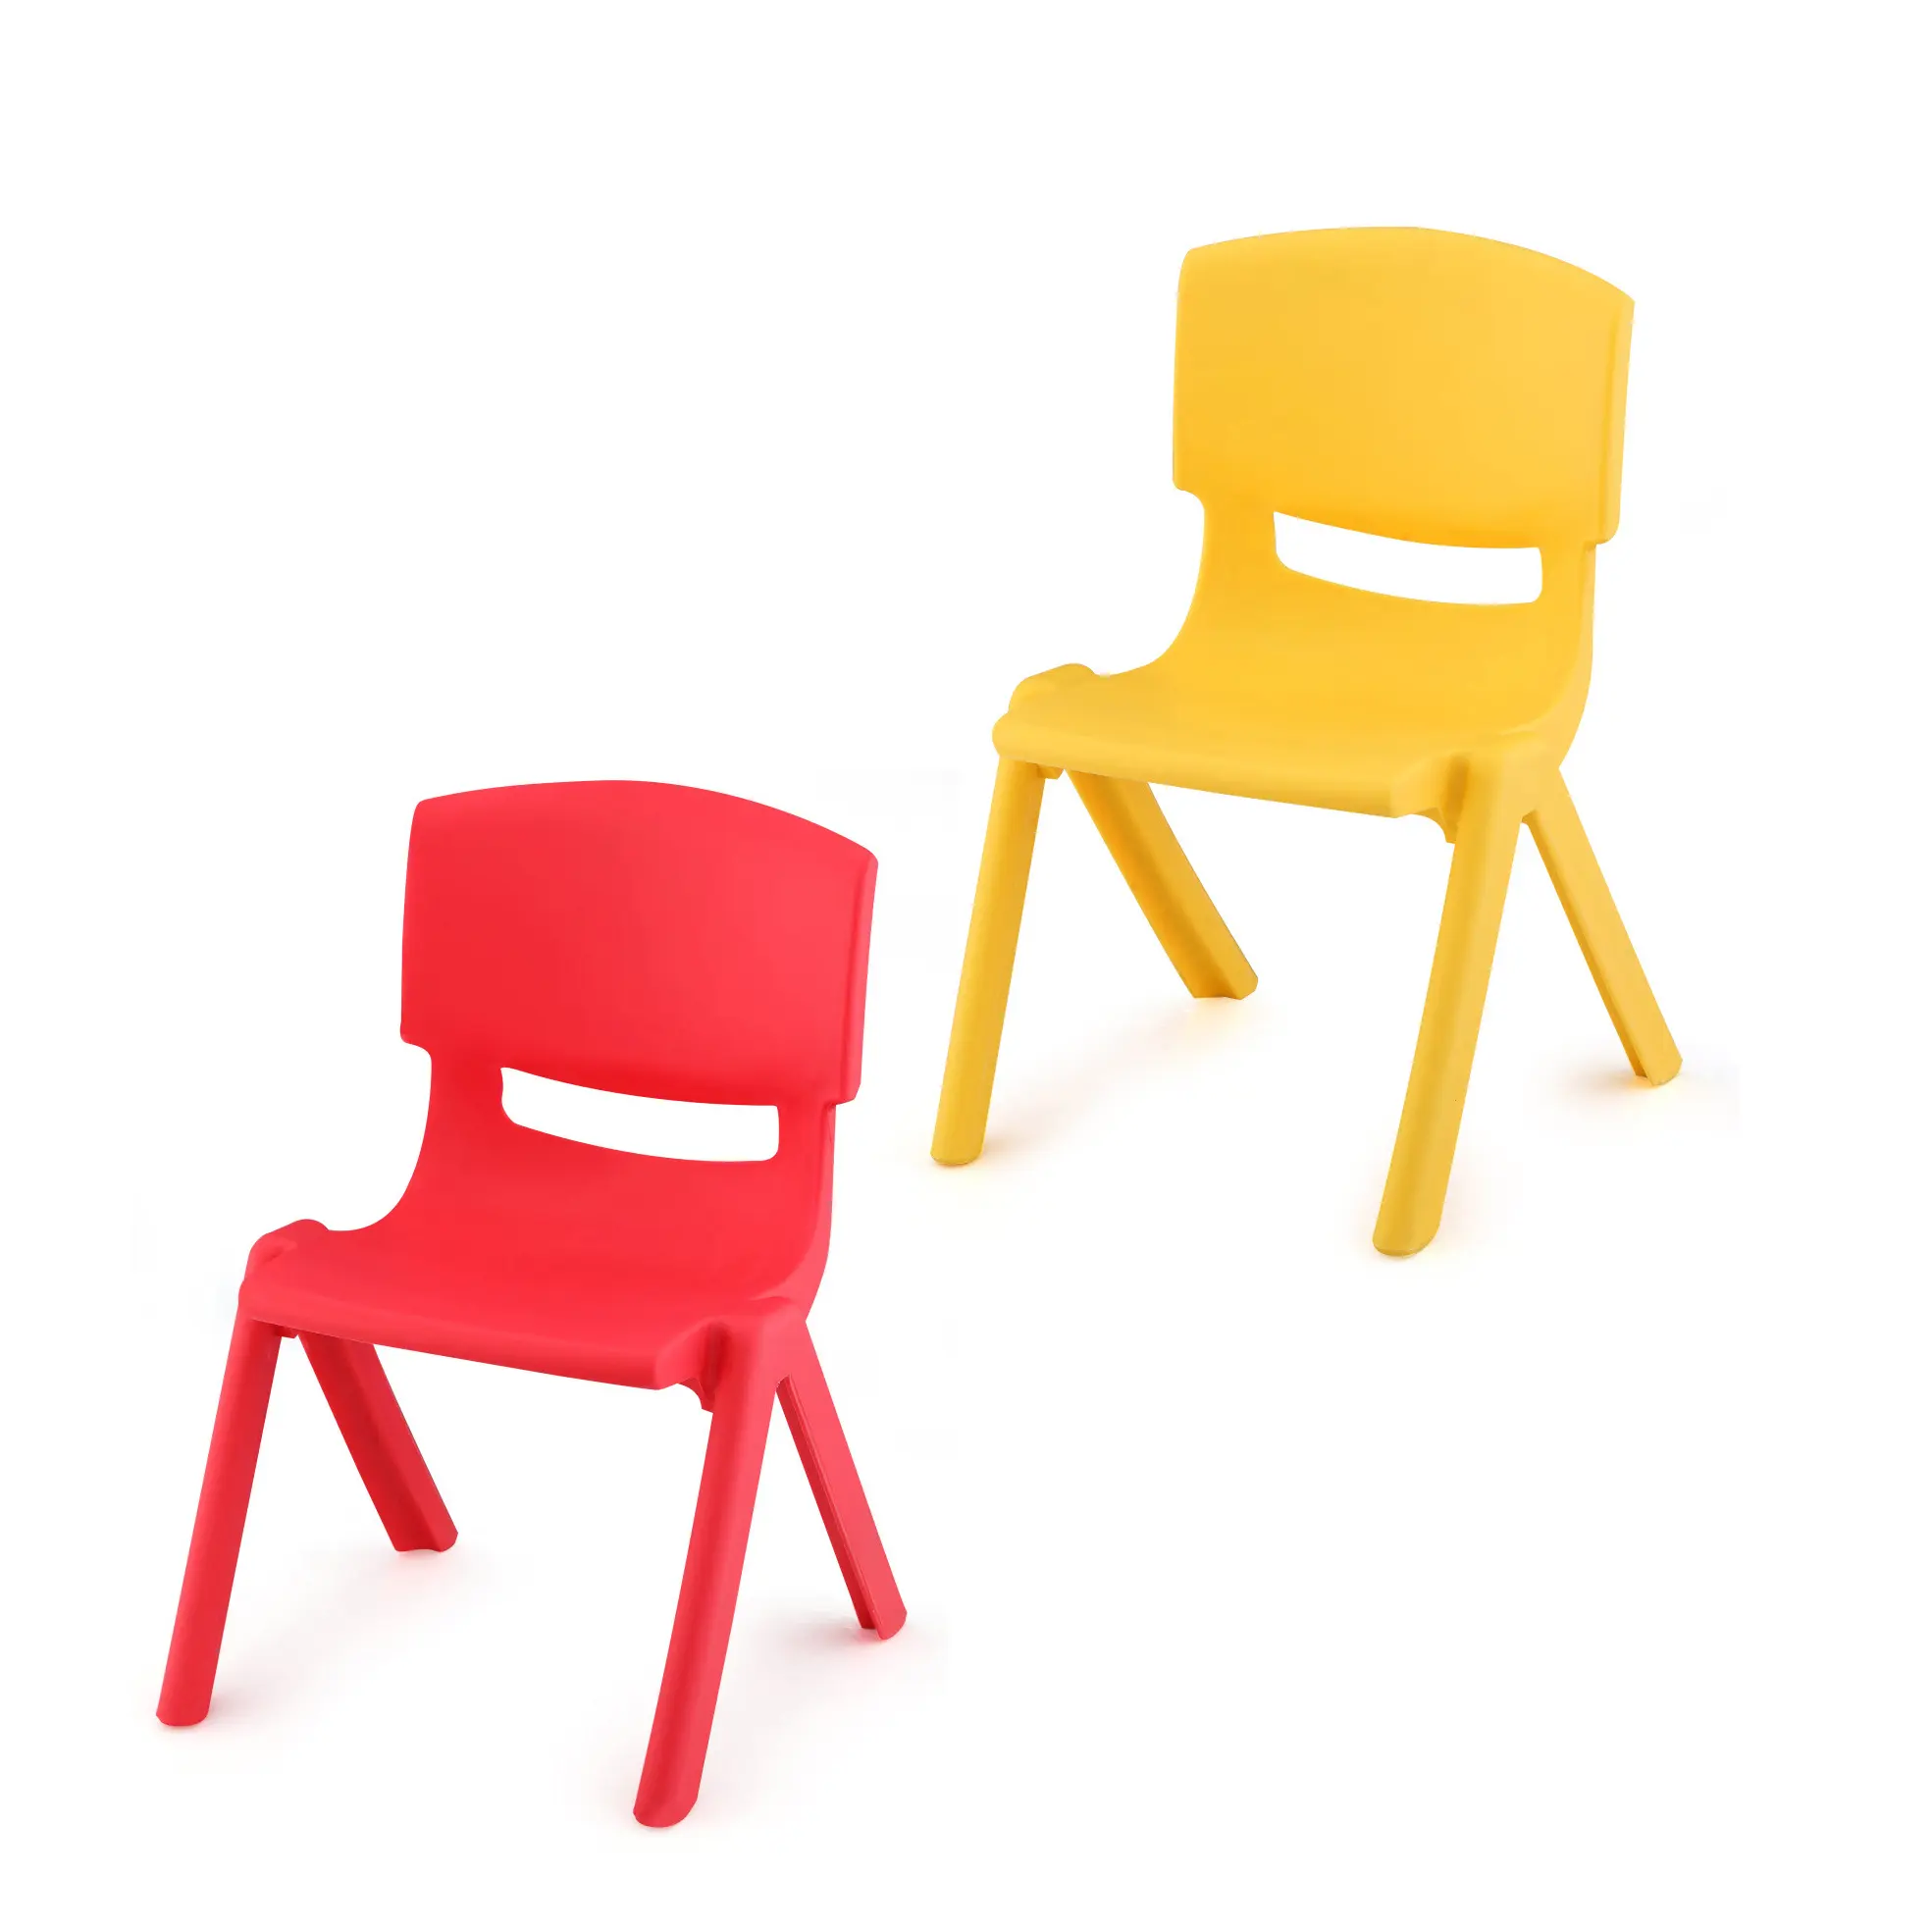 LXY-204 de plástico para niños, silla infantil de cualquier color de alta calidad